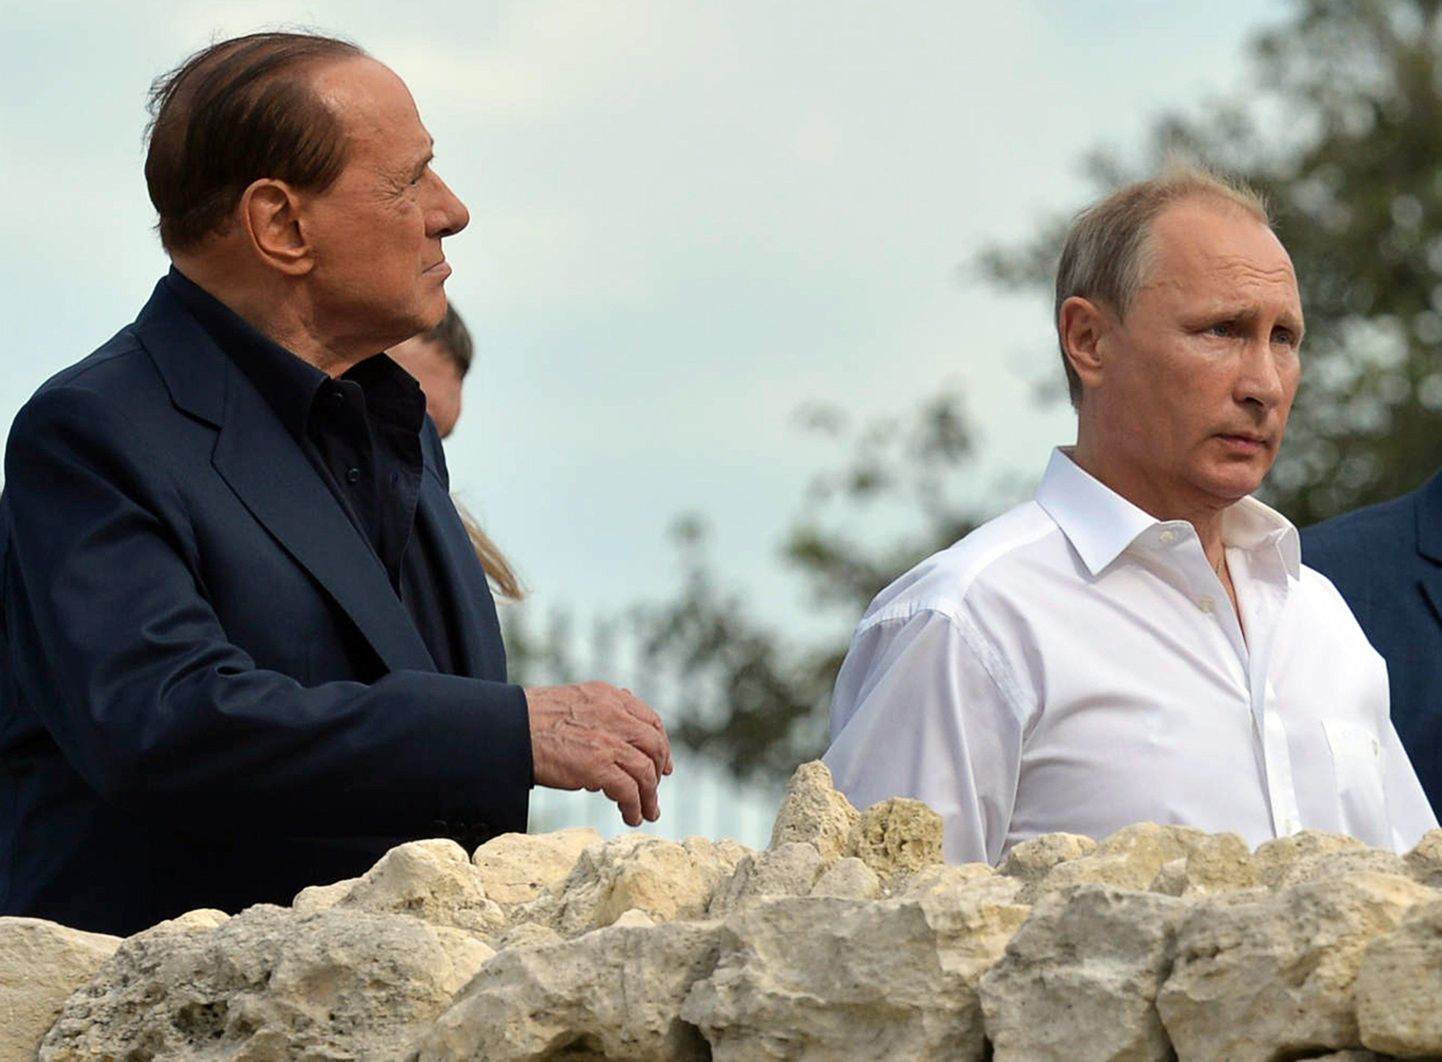 Itaalia endine peaminister ja Vene president Vladimir Putin külastasid Krimmi poolsaart.